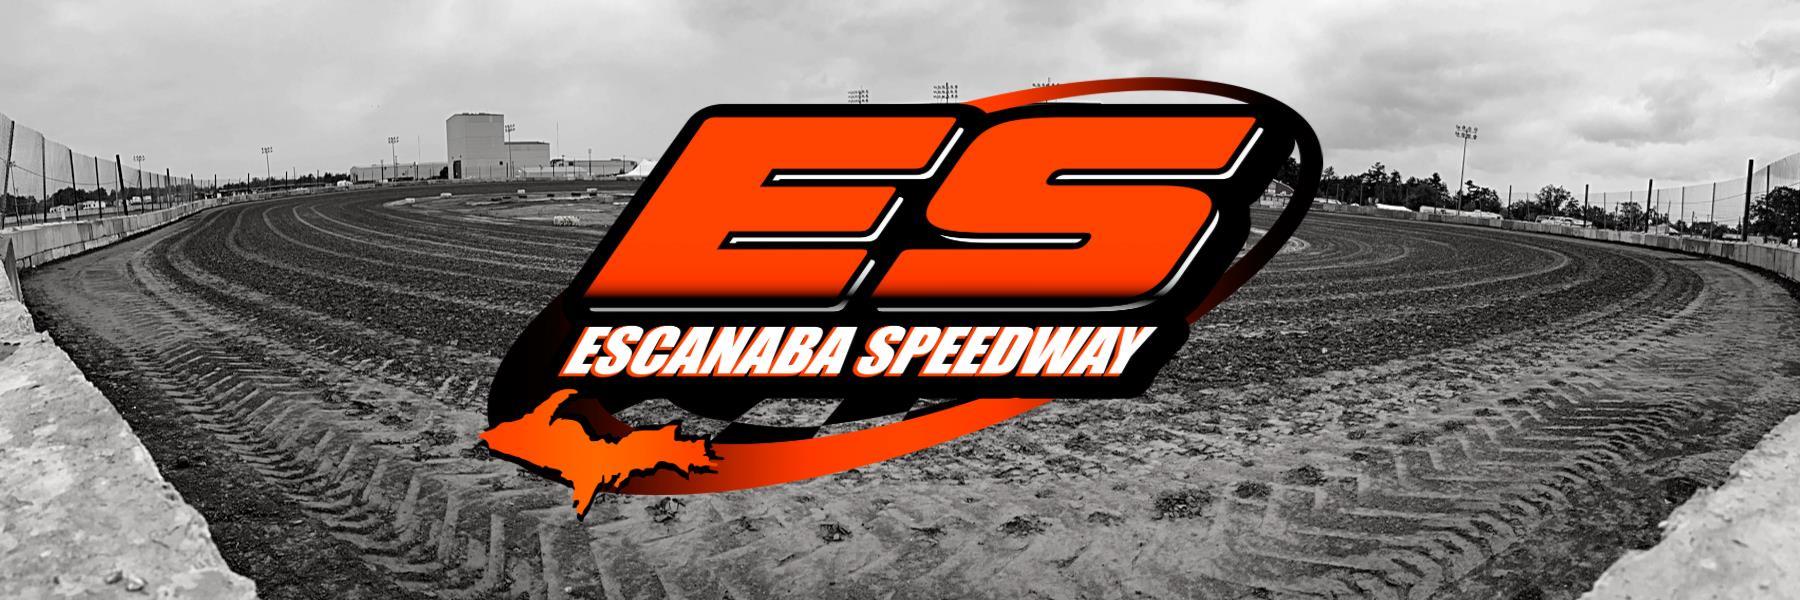 9/8/2018 - Escanaba Speedway